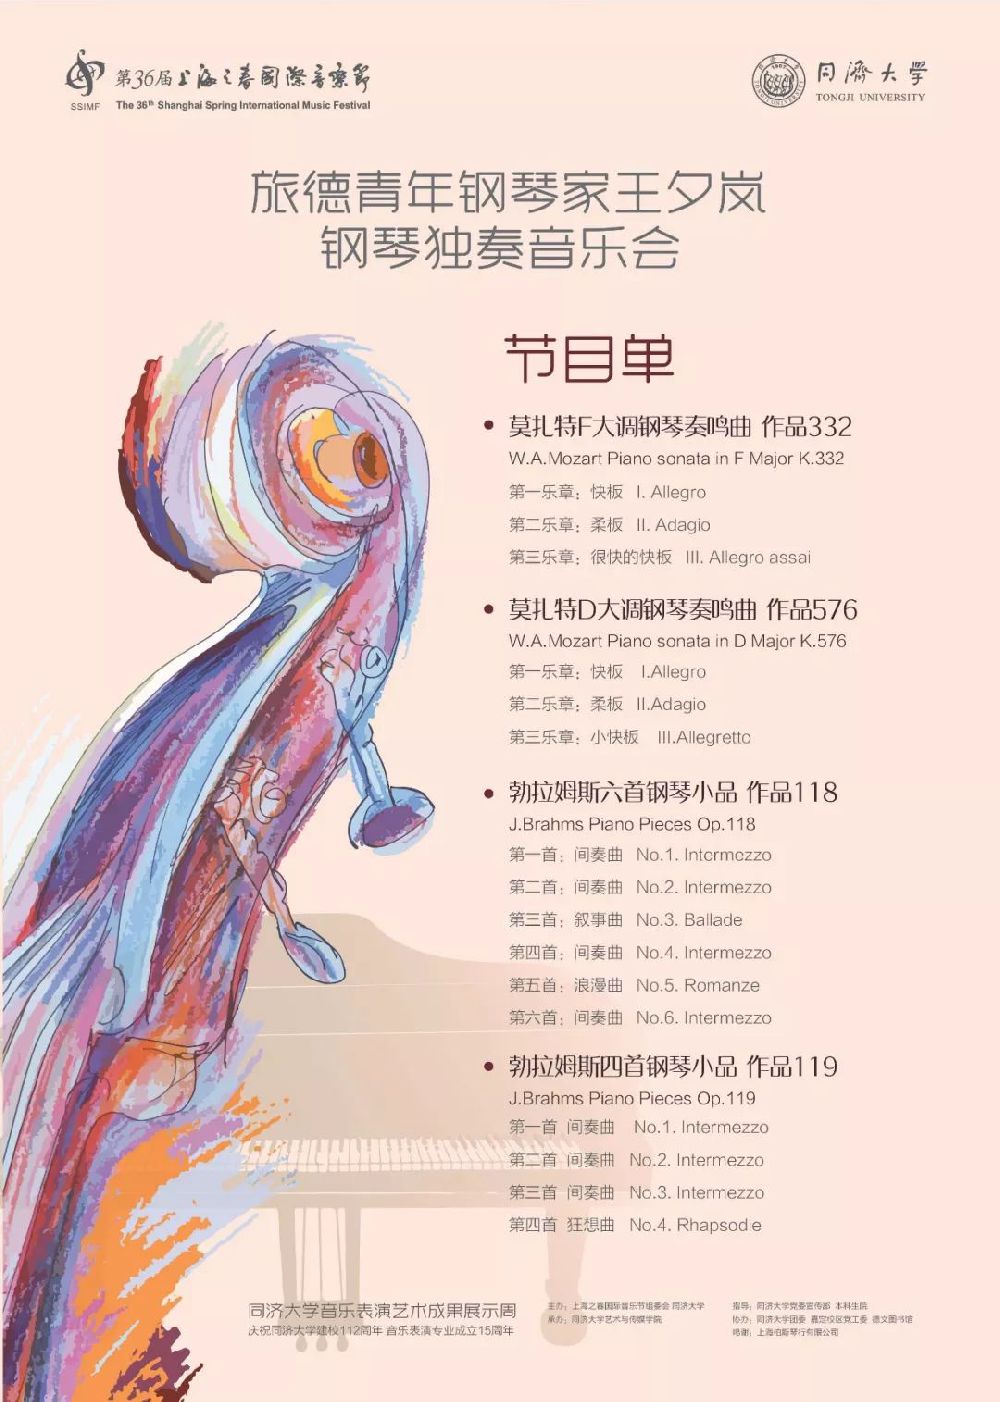 2019上海之春同济大学音乐表演艺术周节目单 领票方式